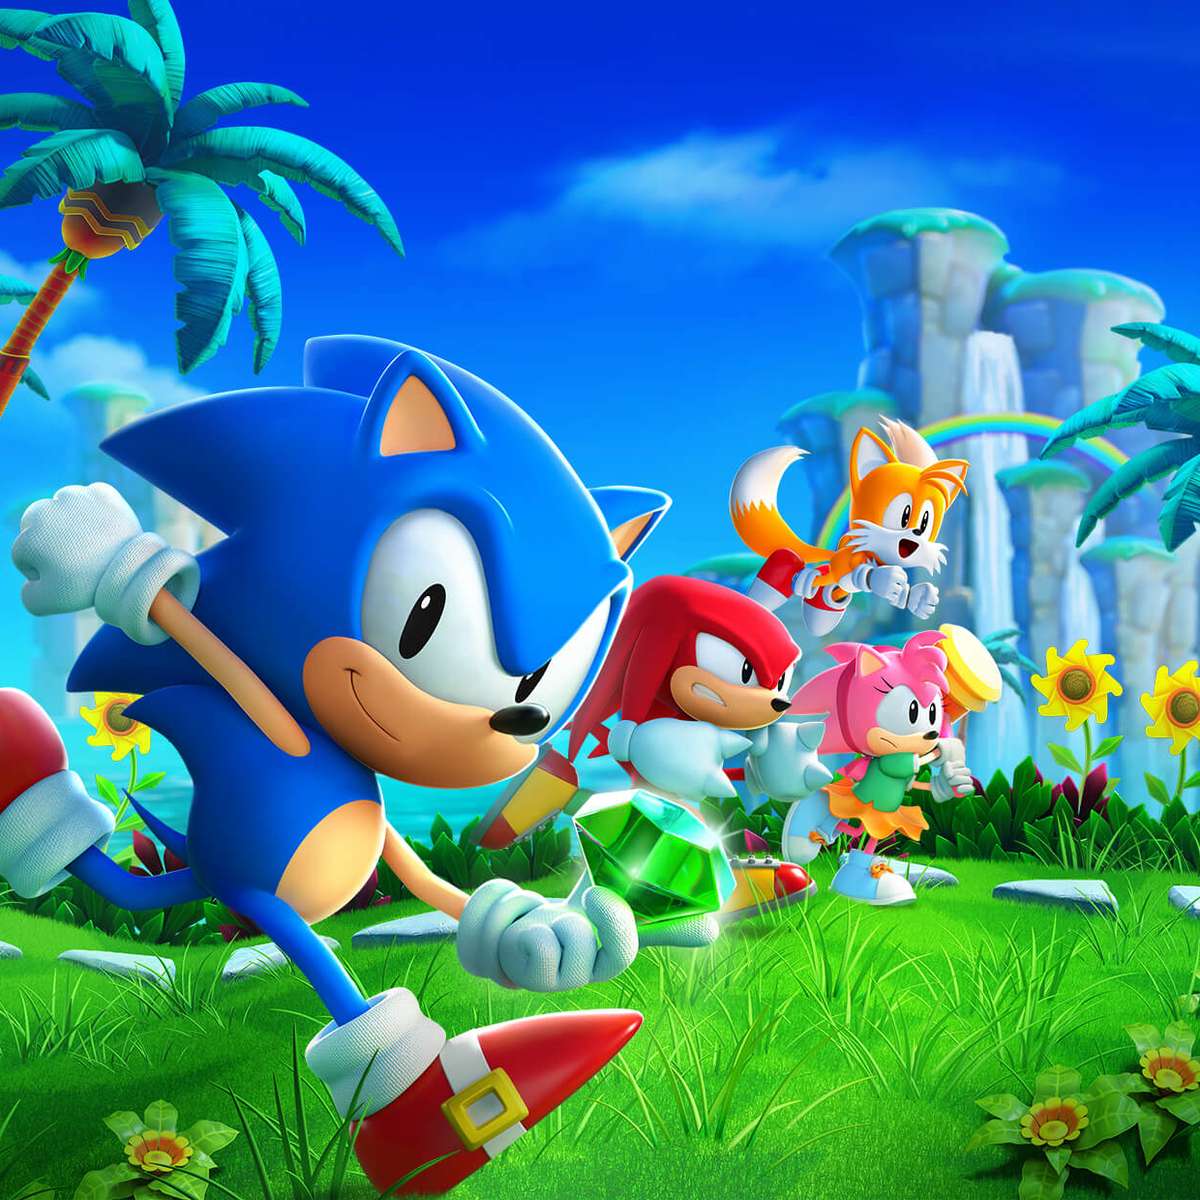 Jogamos Sonic Superstars: veja nossas primeiras impressões